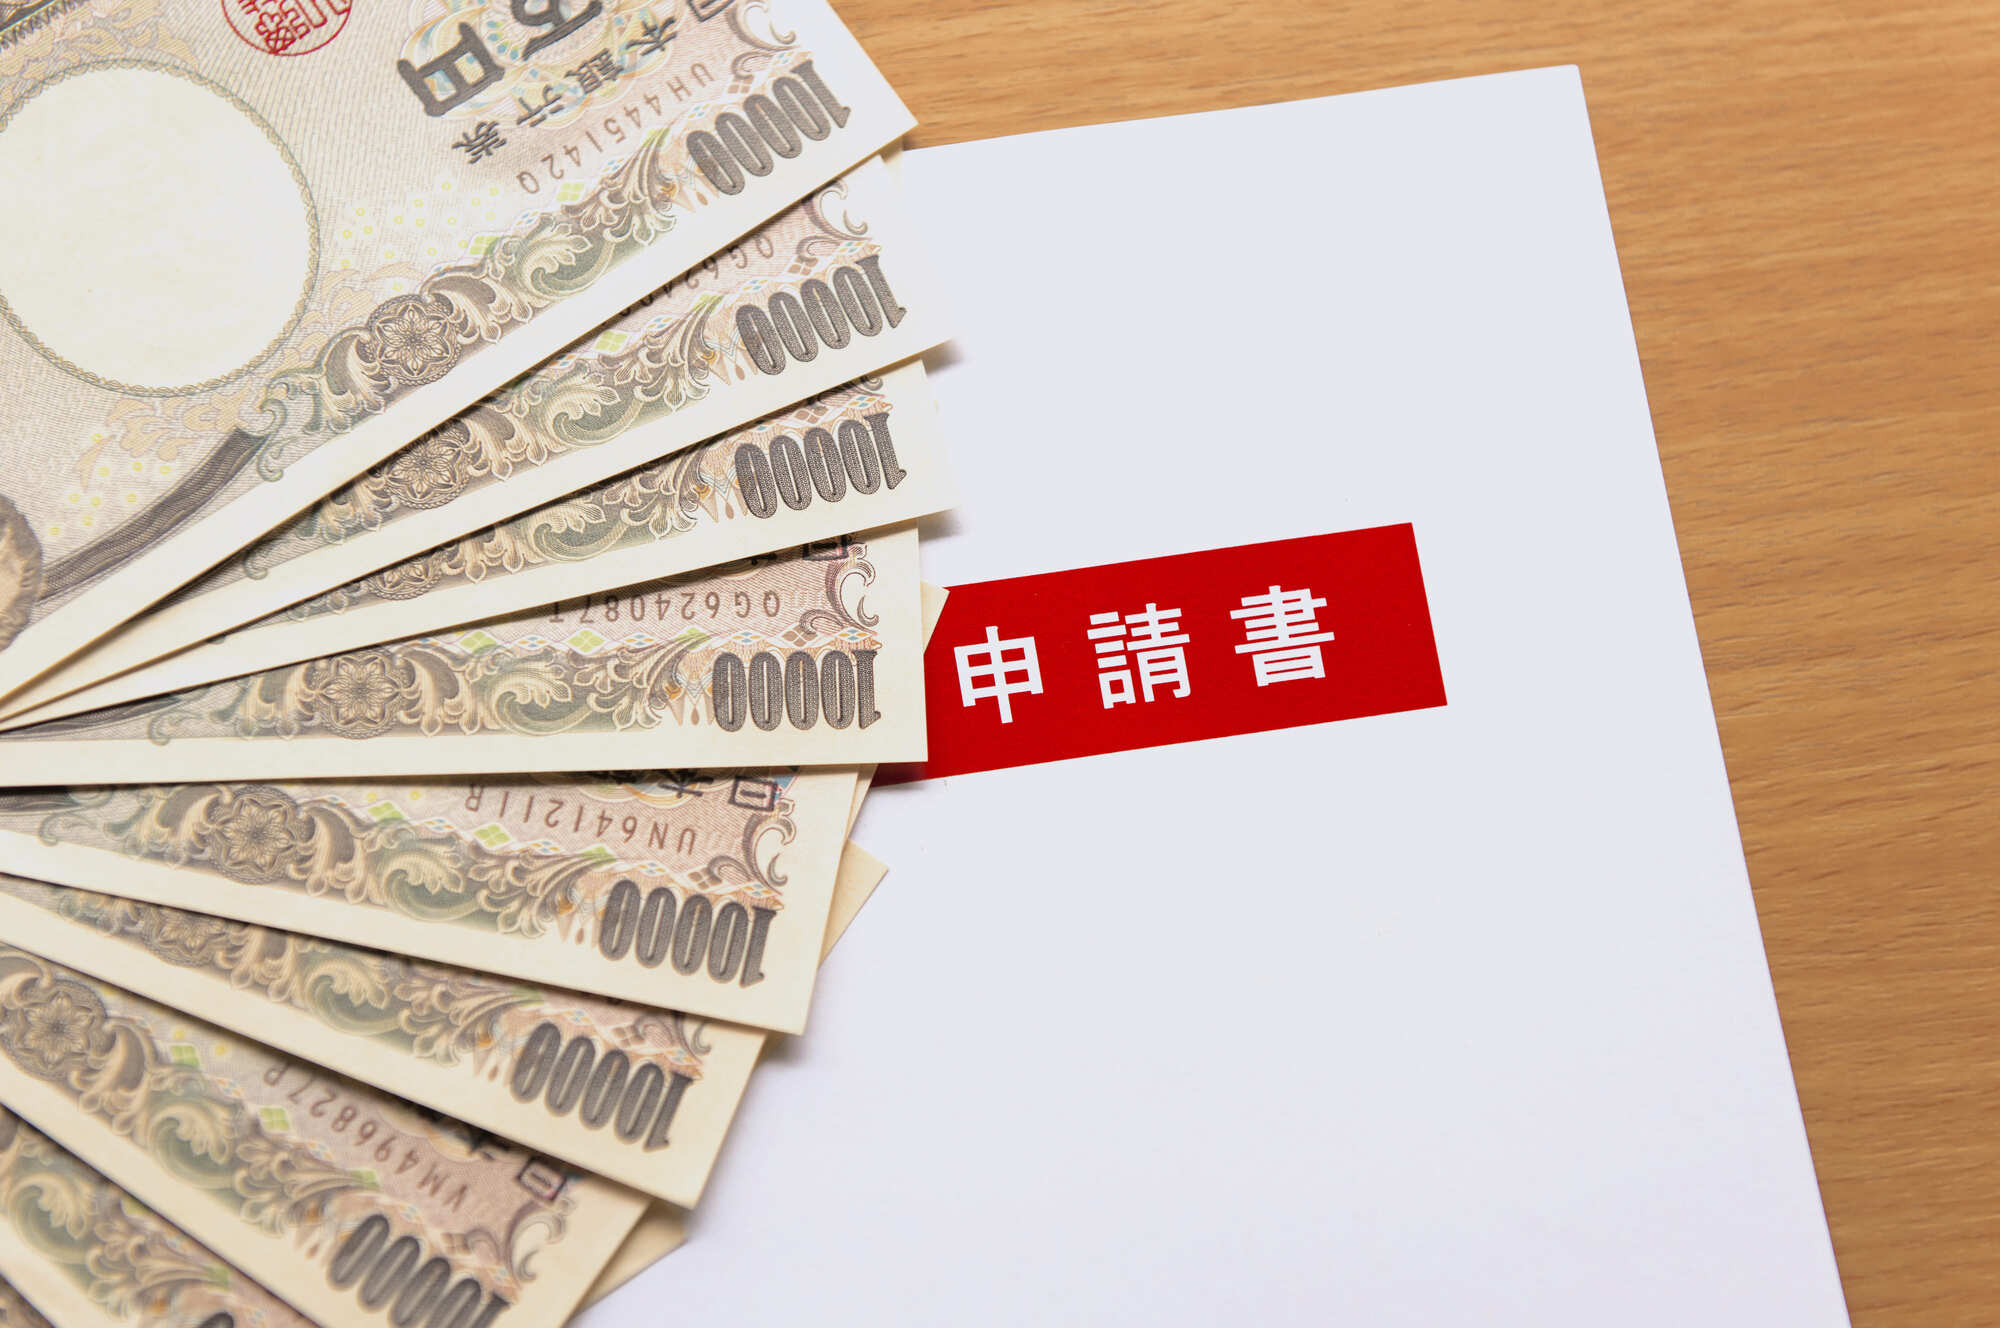 一万円札と申請書の写真